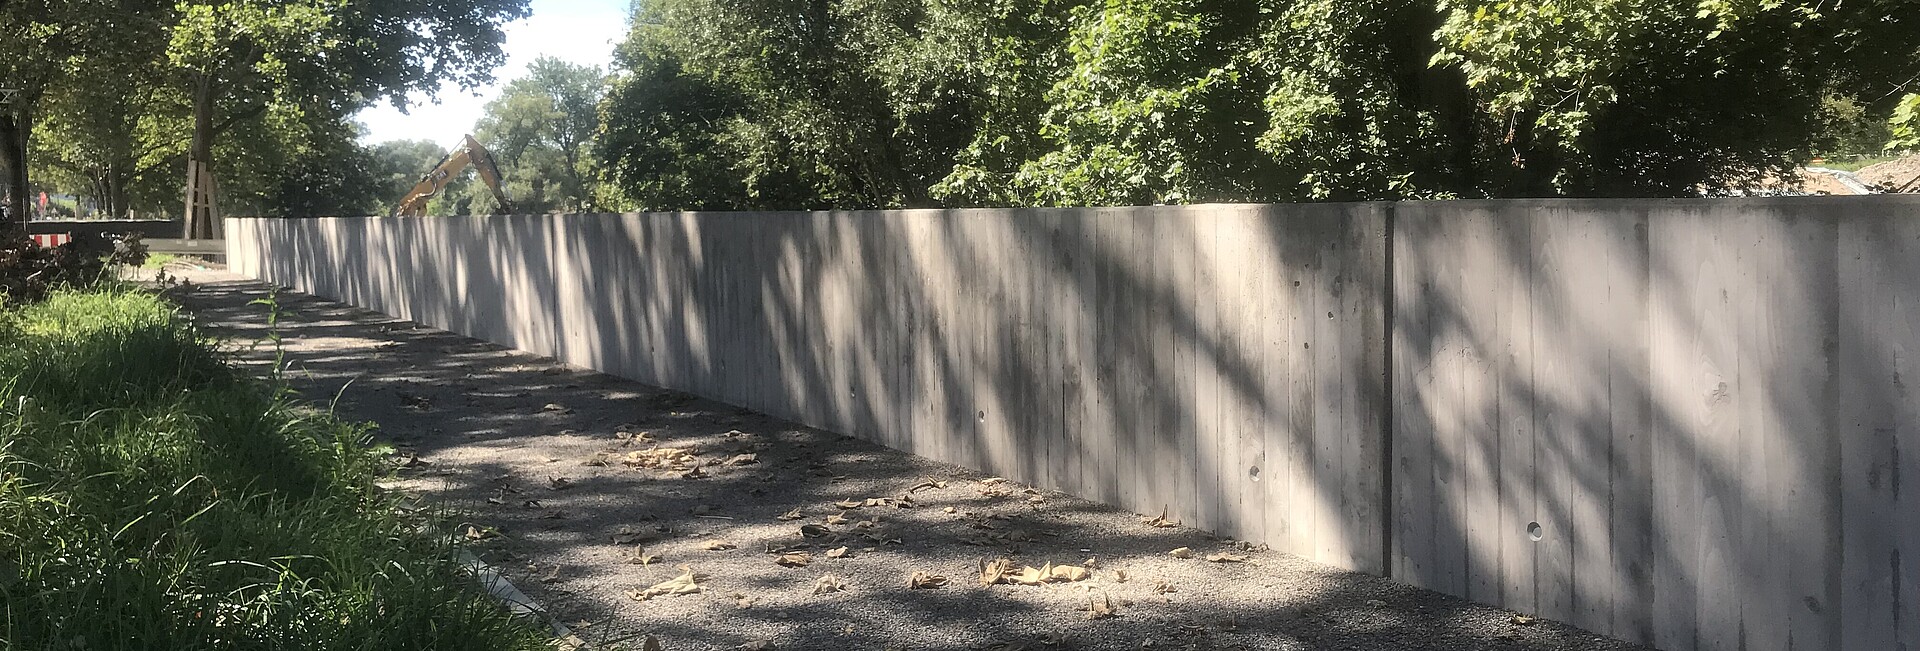 Hochwasserschutz in der Bismarkcstraße: Eine Mauer aus Beton führt entlang einer Straße